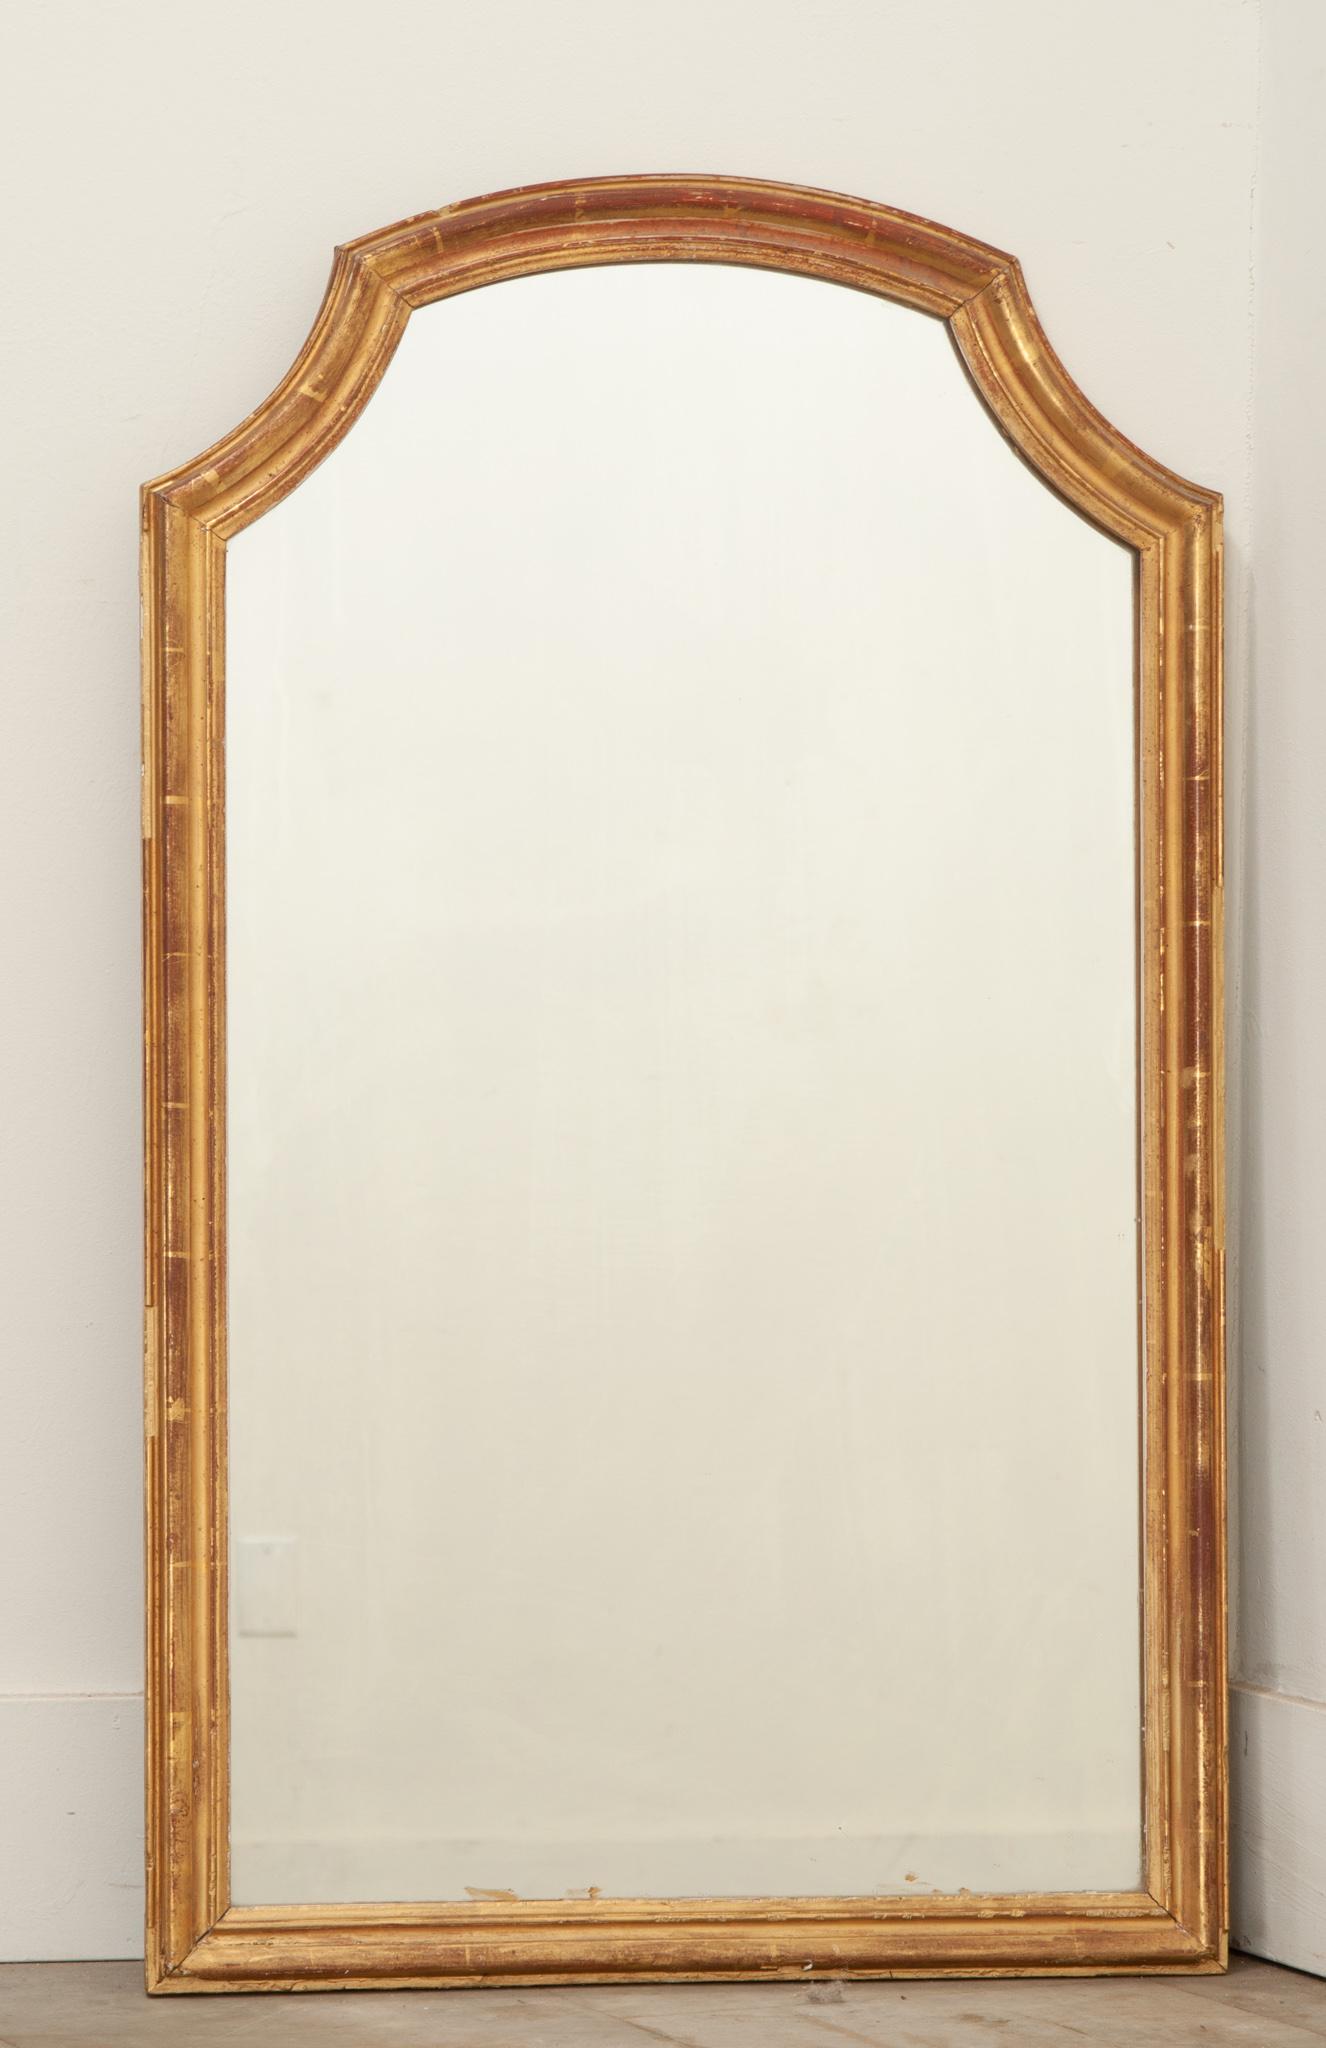 Ein kleiner Spiegel aus vergoldetem Holz, hergestellt in Frankreich. Die Spiegelplatte ist von einem schlichten vergoldeten Rahmen mit einem konvexen Bogen an der Spitze umgeben. Die ursprüngliche Vergoldung weist Patina auf, die das rötliche Holz